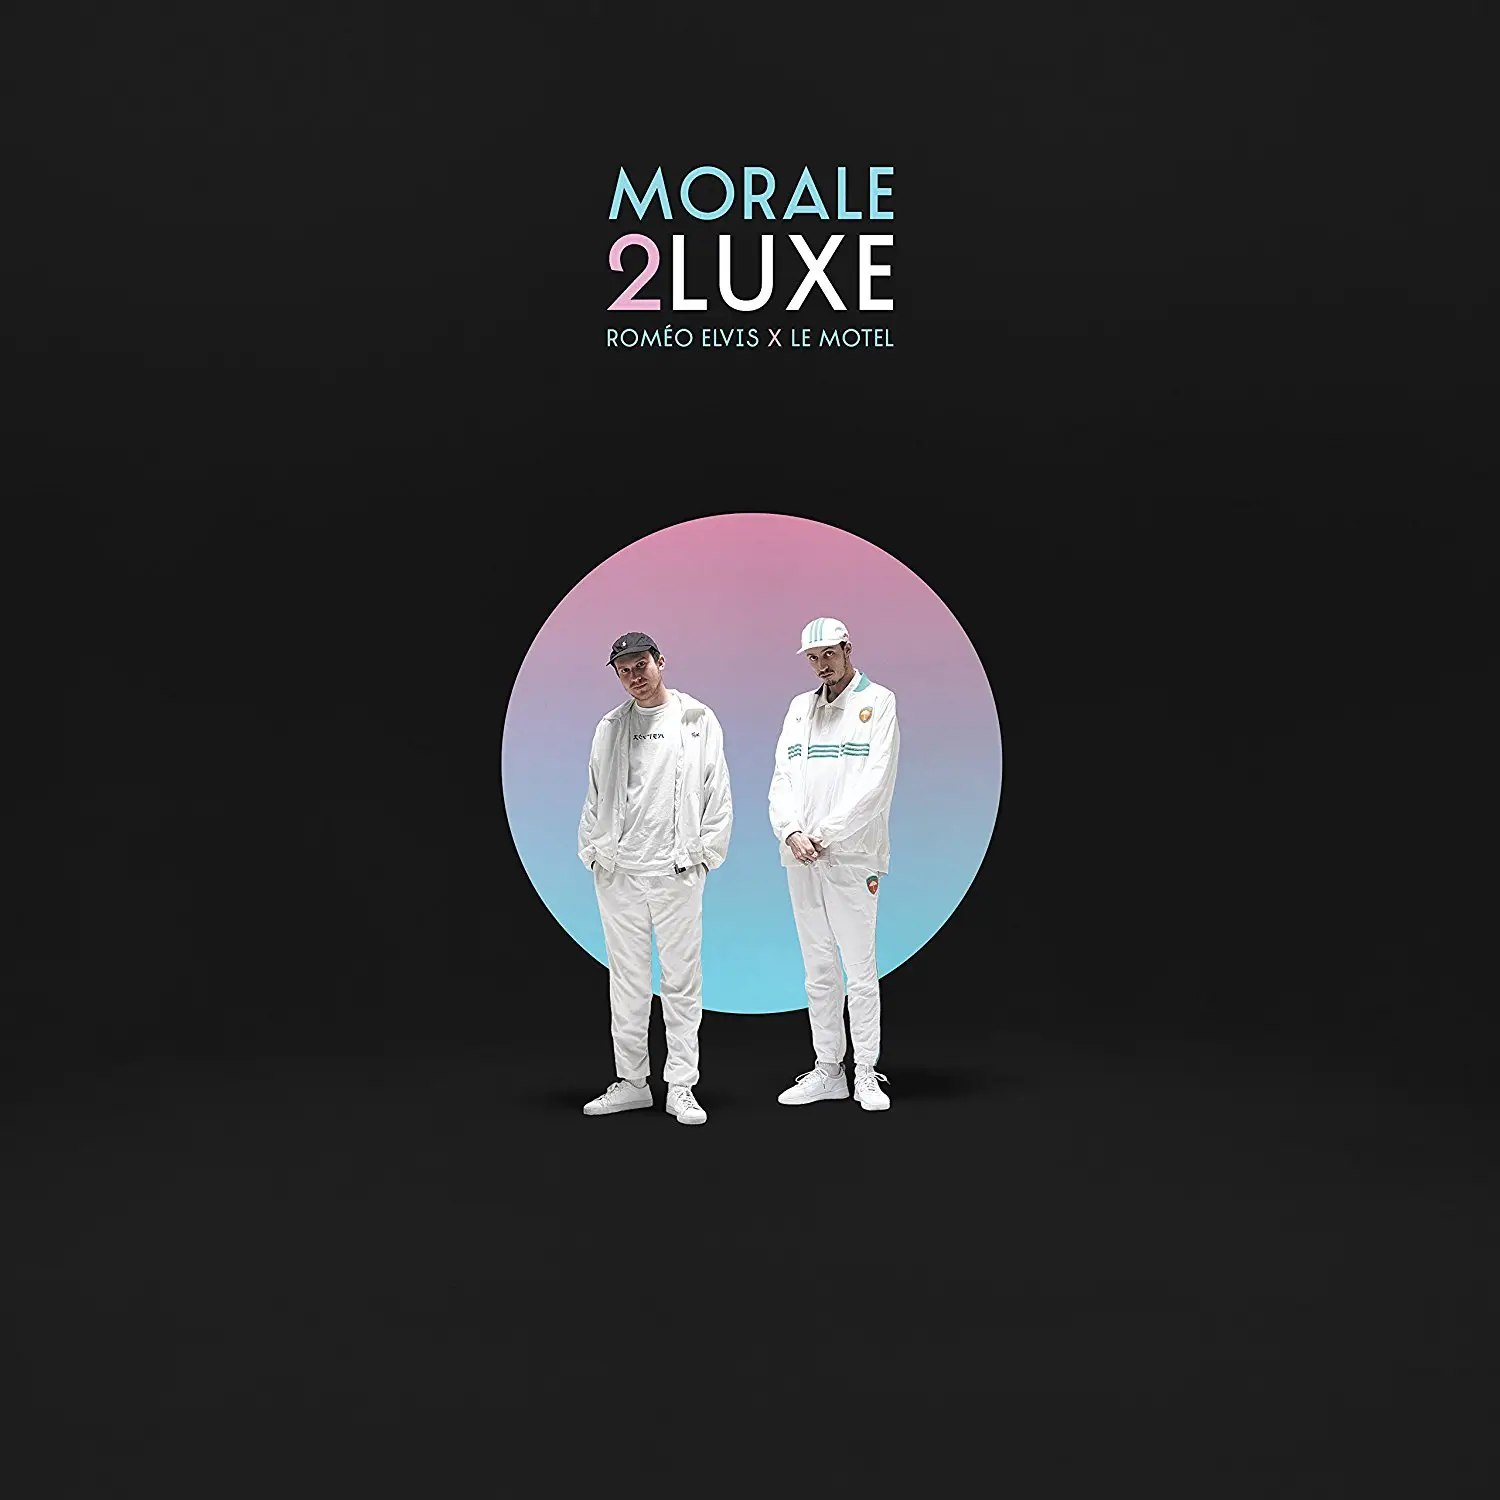 Morale 2luxe (2LP Gatefold - Tirage Limité) - Roméo Elvis, Vinyle pas cher Amazon